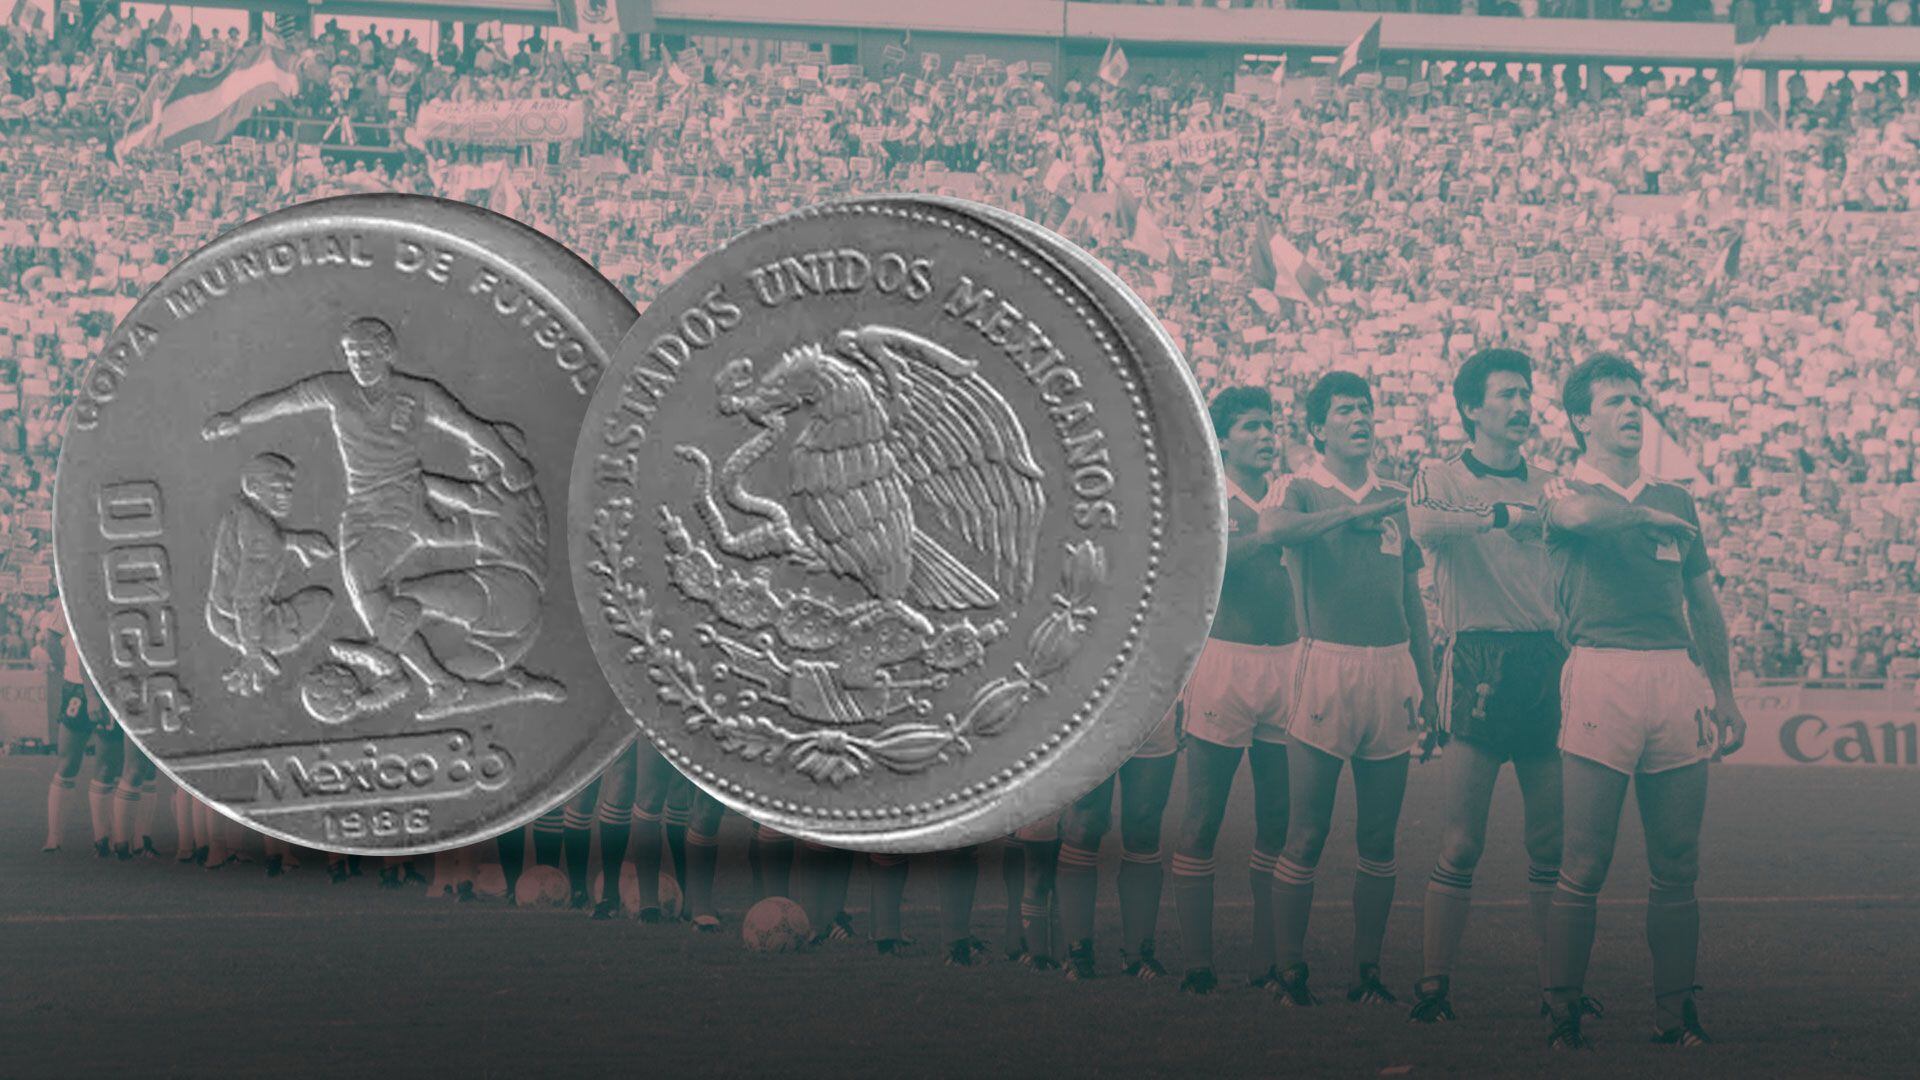 Moneda Copa mundial de futbol 86. (Foto: Jovani Pérez/Infobae)